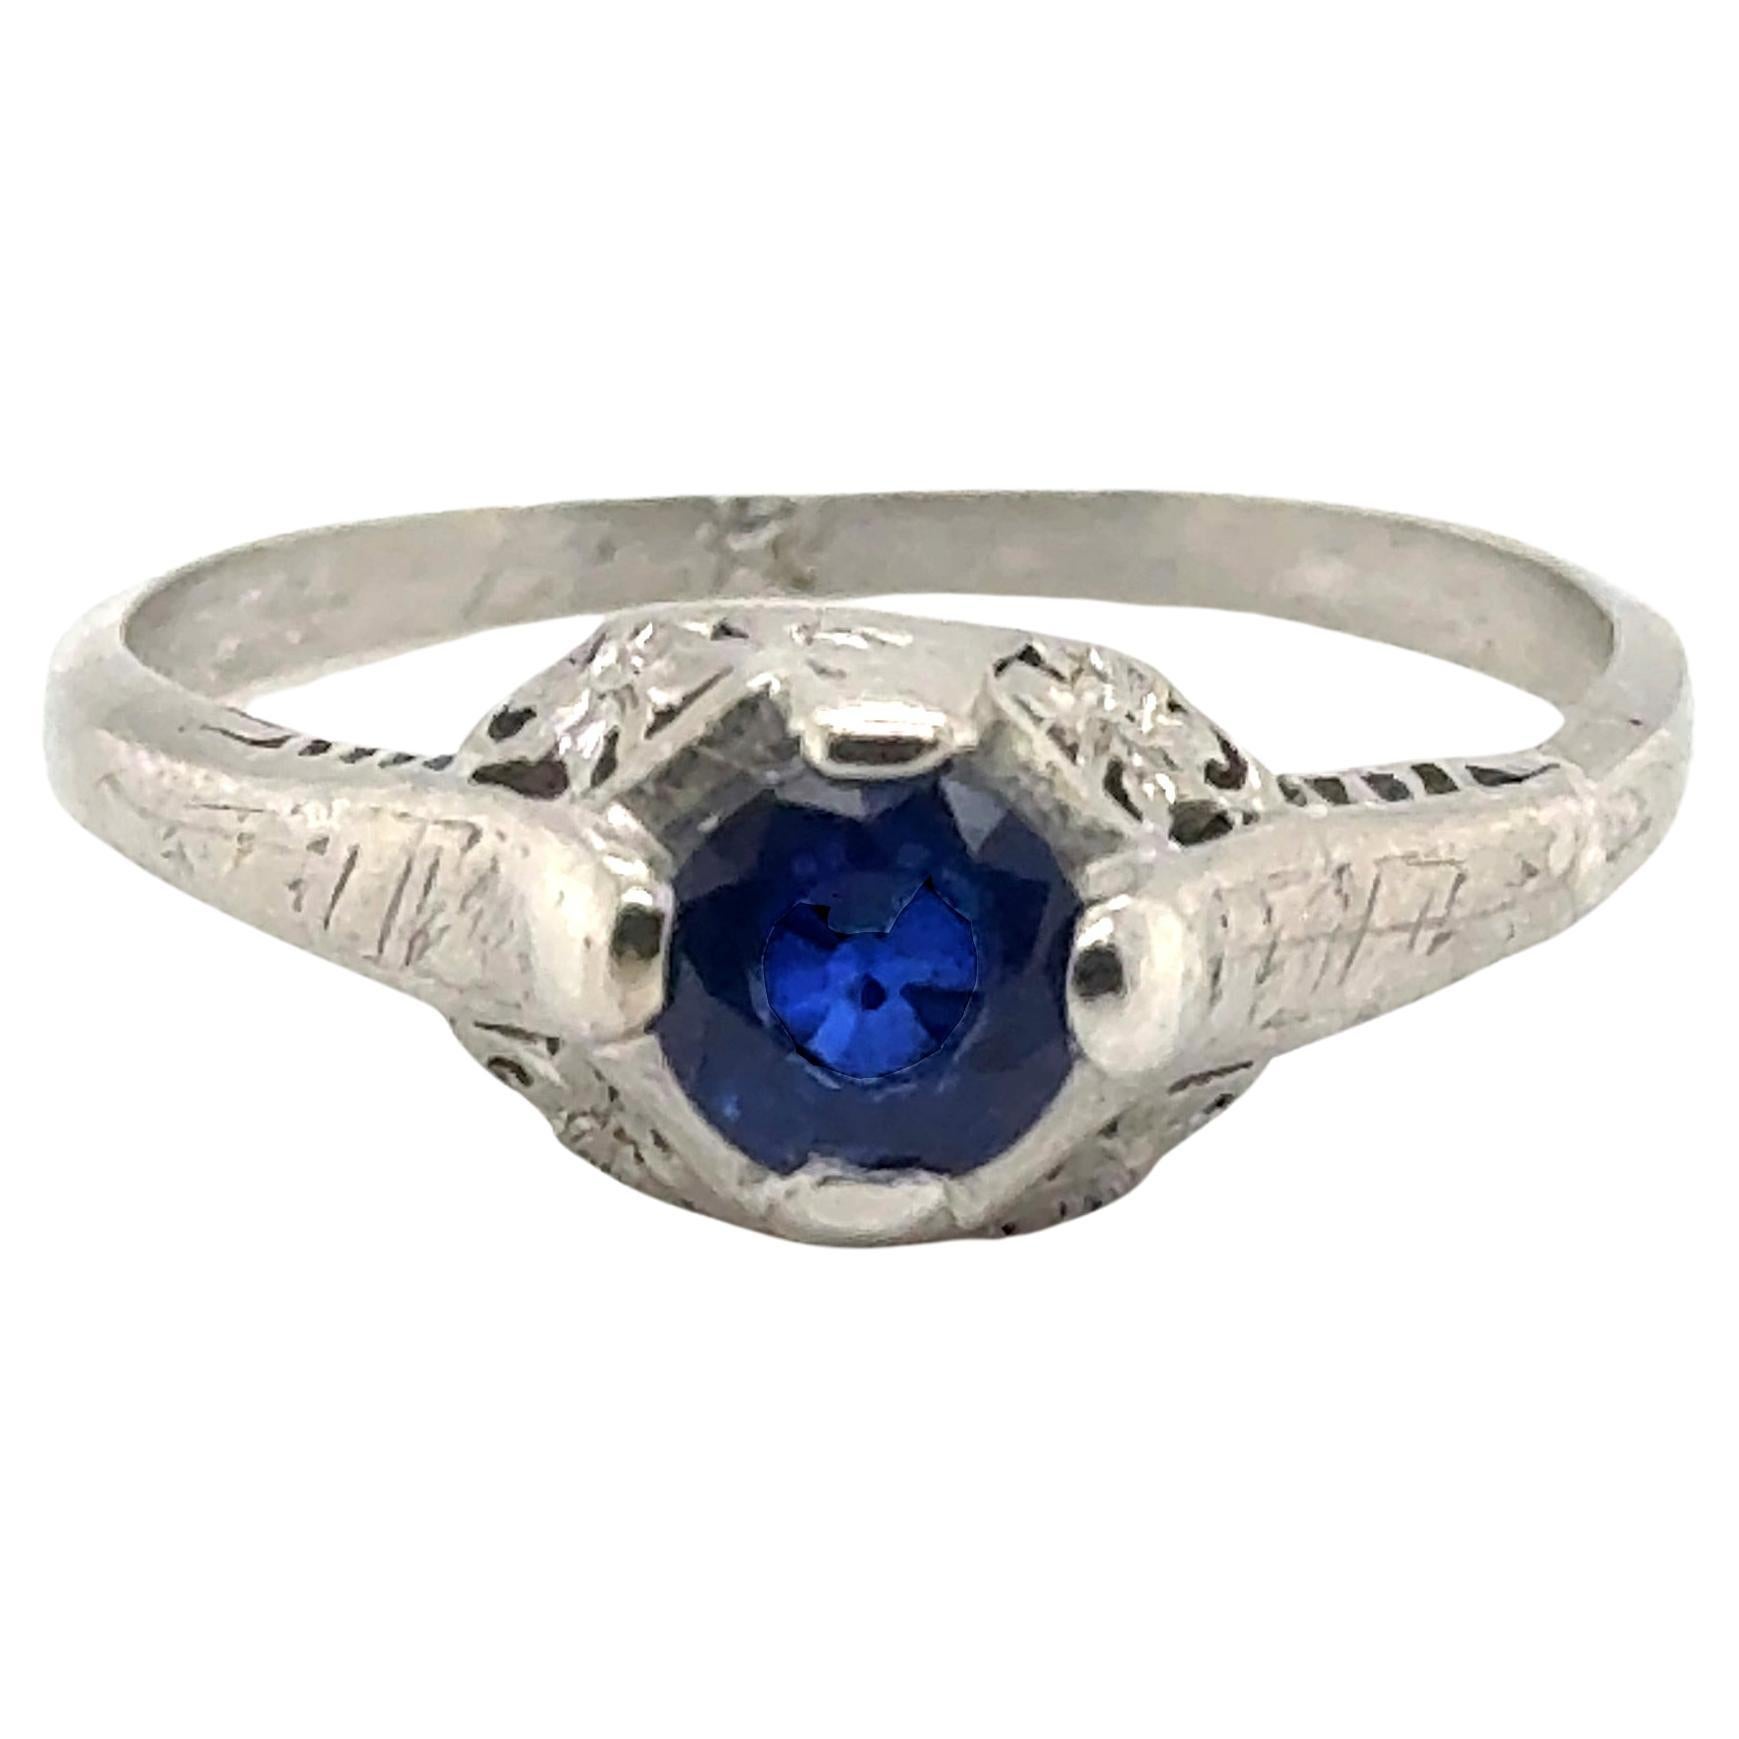 Art Deco Sapphire Engagement Ring .70ct Solitaire Platinum Antique Original 1920